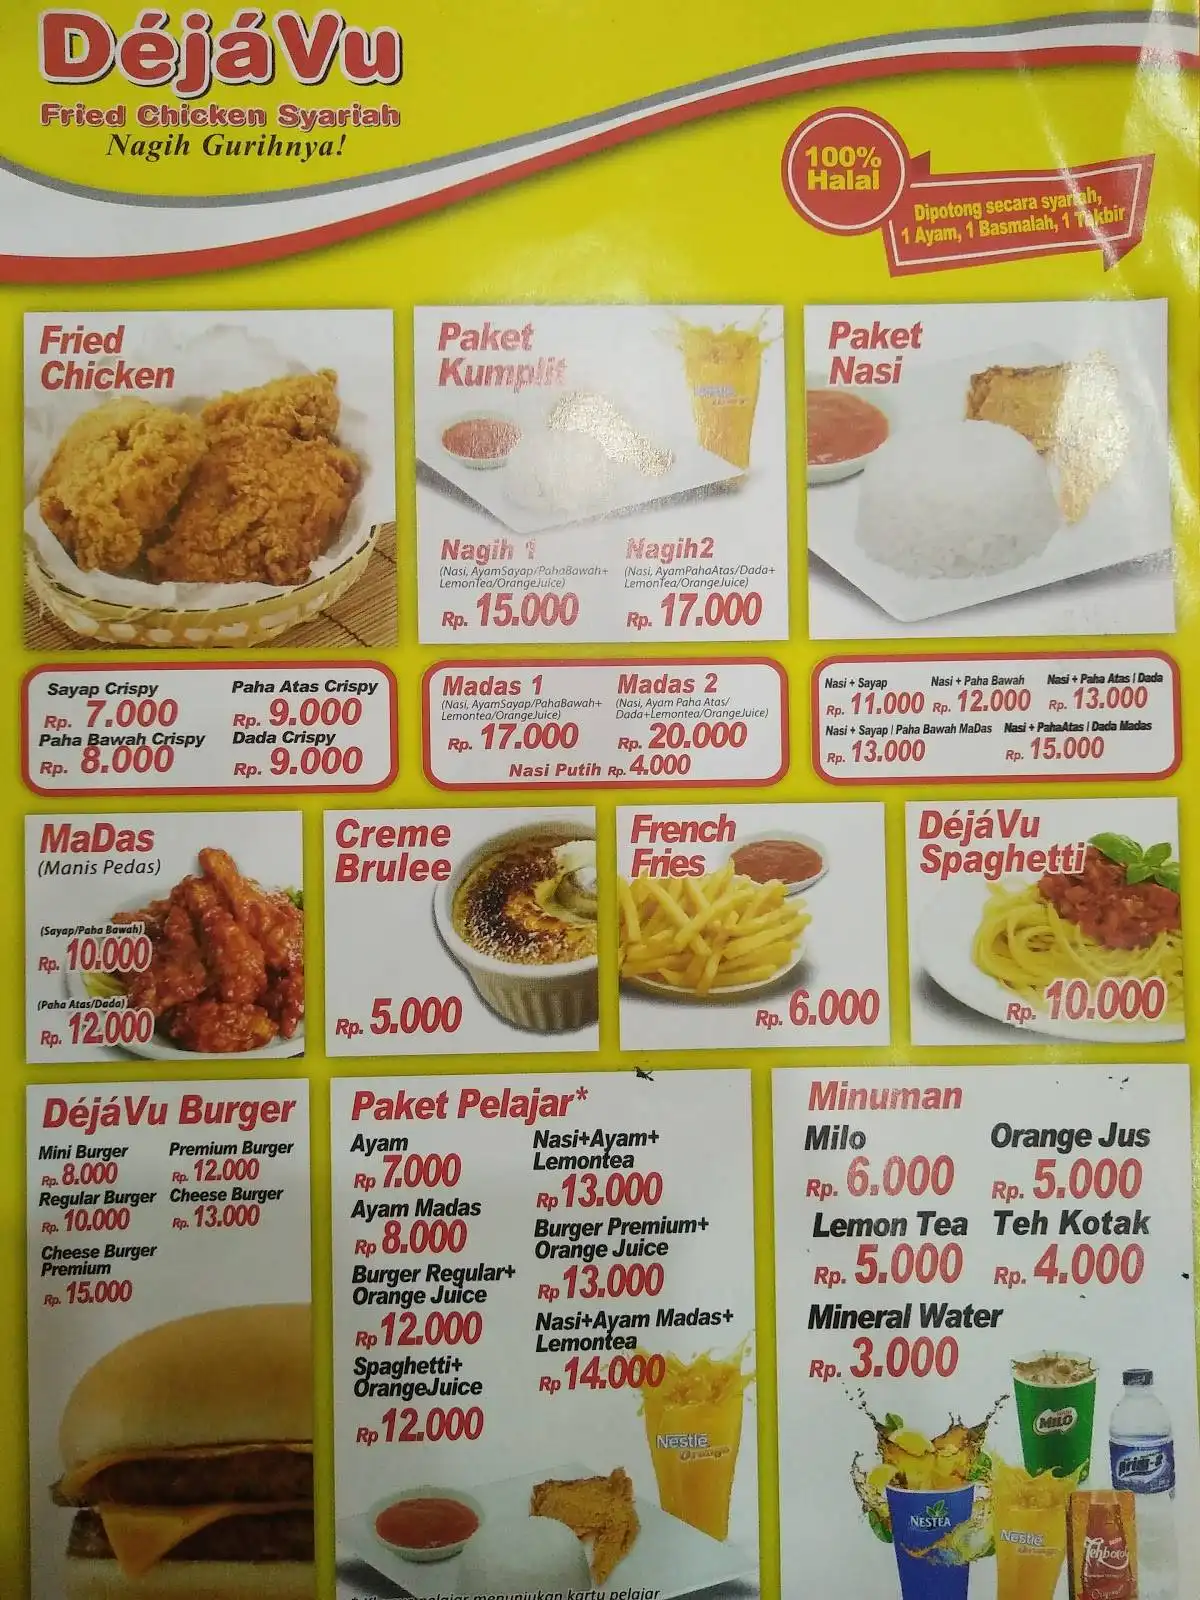 Dejavu Fried Chicken Syariah